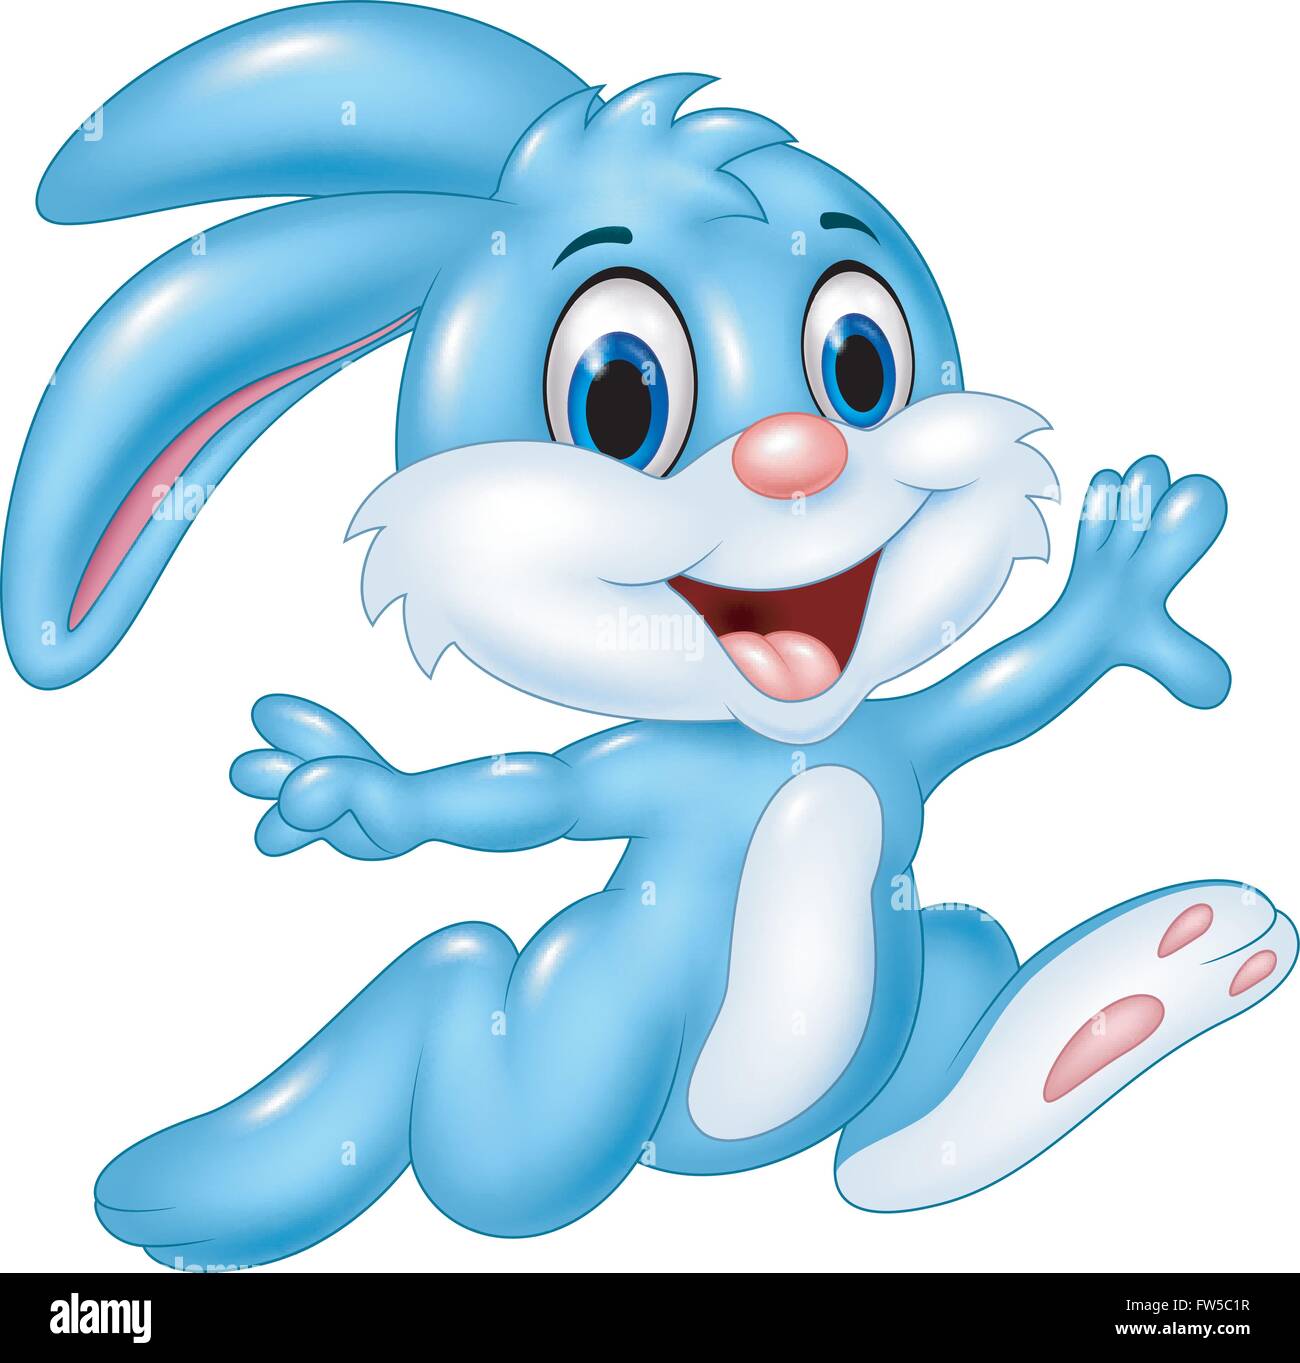 happy bunny rabbit